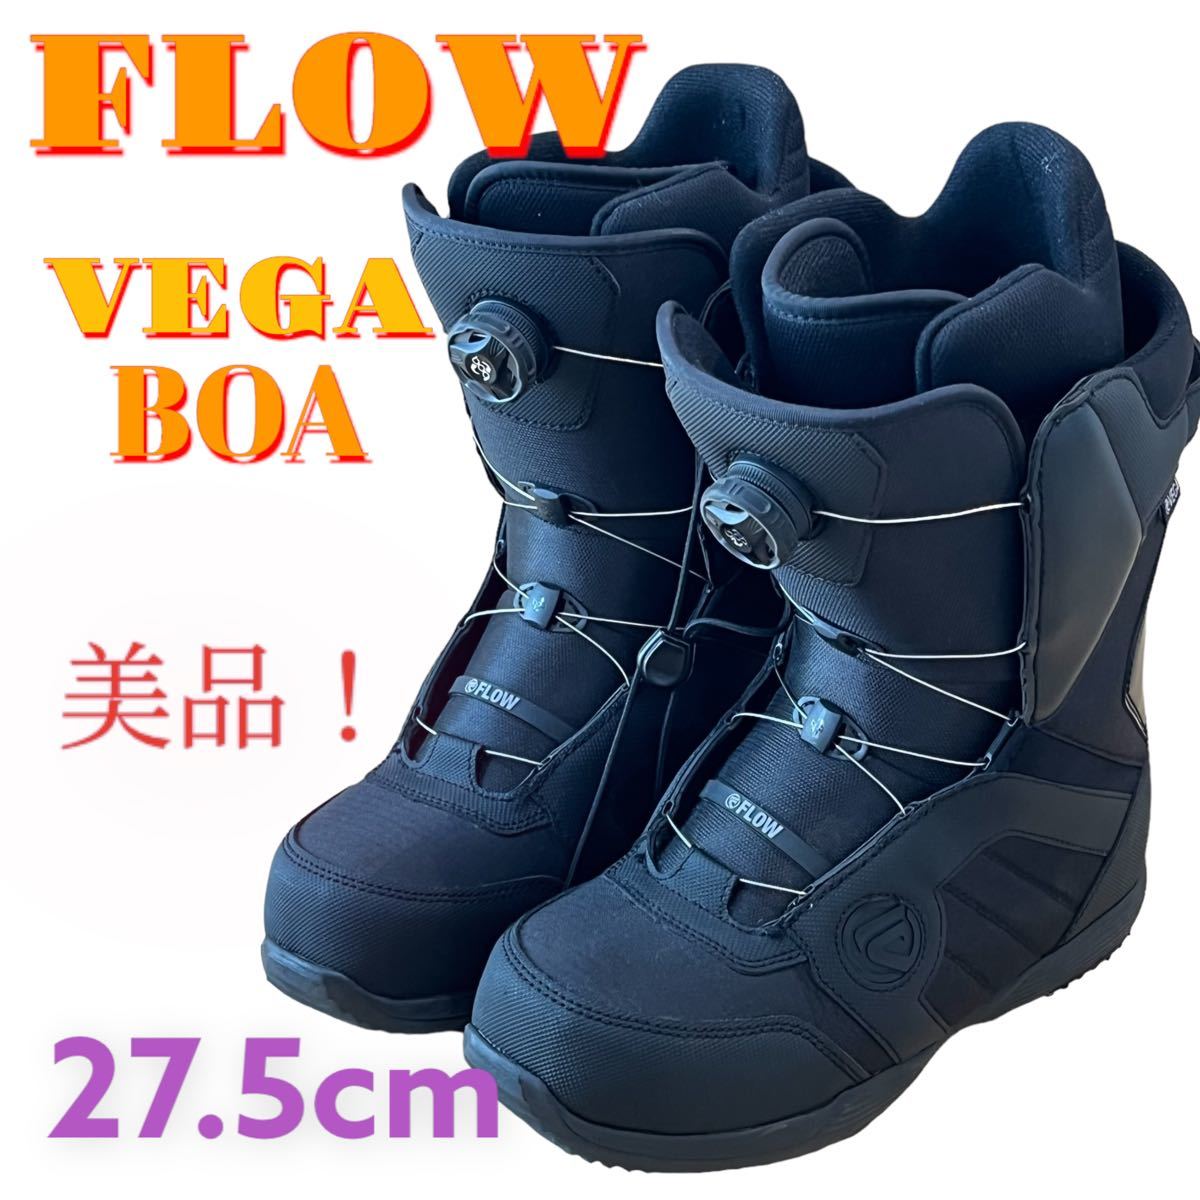 FLOW フロー boa スノーボード ブーツ echo 23.0cm スノボ オフ 4500円